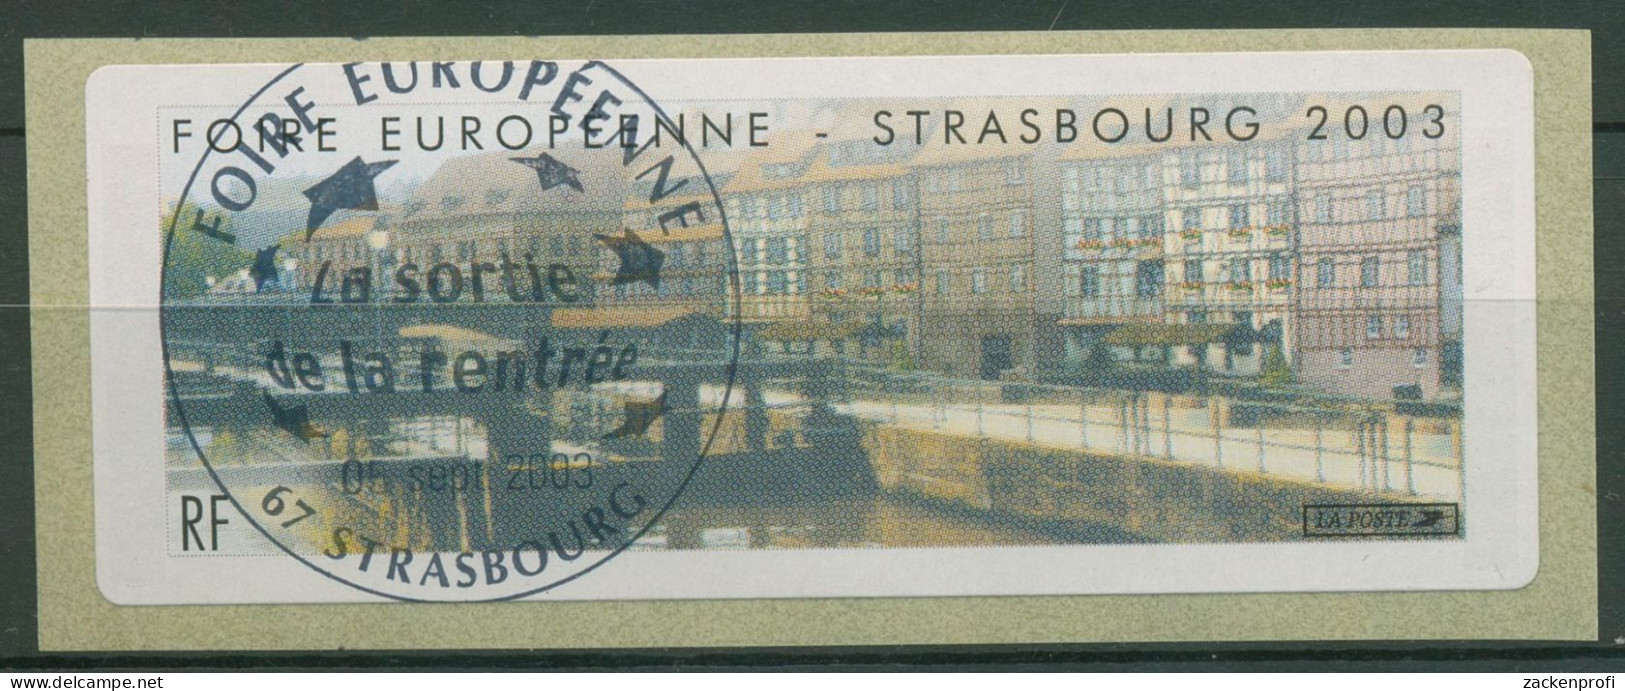 Frankreich 2003 Automatenmarken Europa-Messe Straßburg ATM 30 Gestempelt - 1999-2009 Vignettes Illustrées